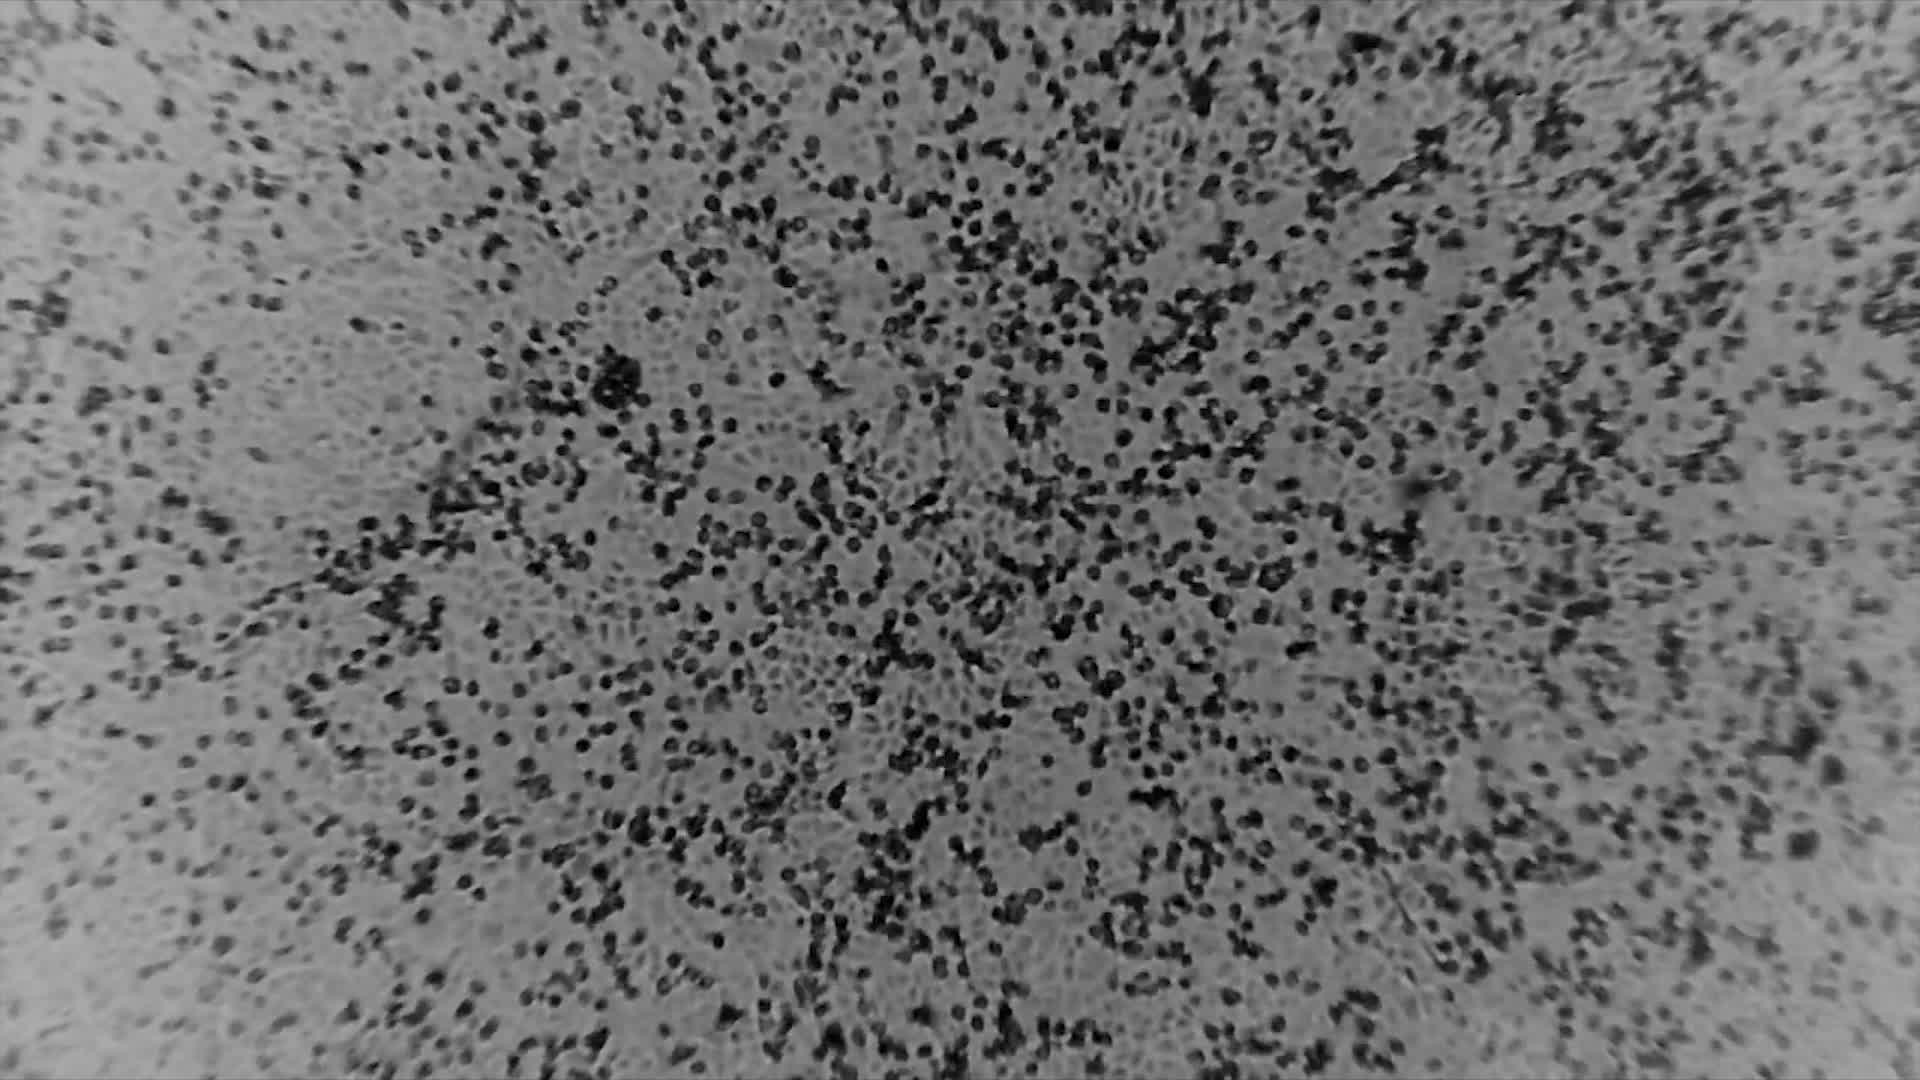 Chủng mới virus Corona dưới kính hiển vi. Ảnh: Viện Doherty, Đại học Melbourne